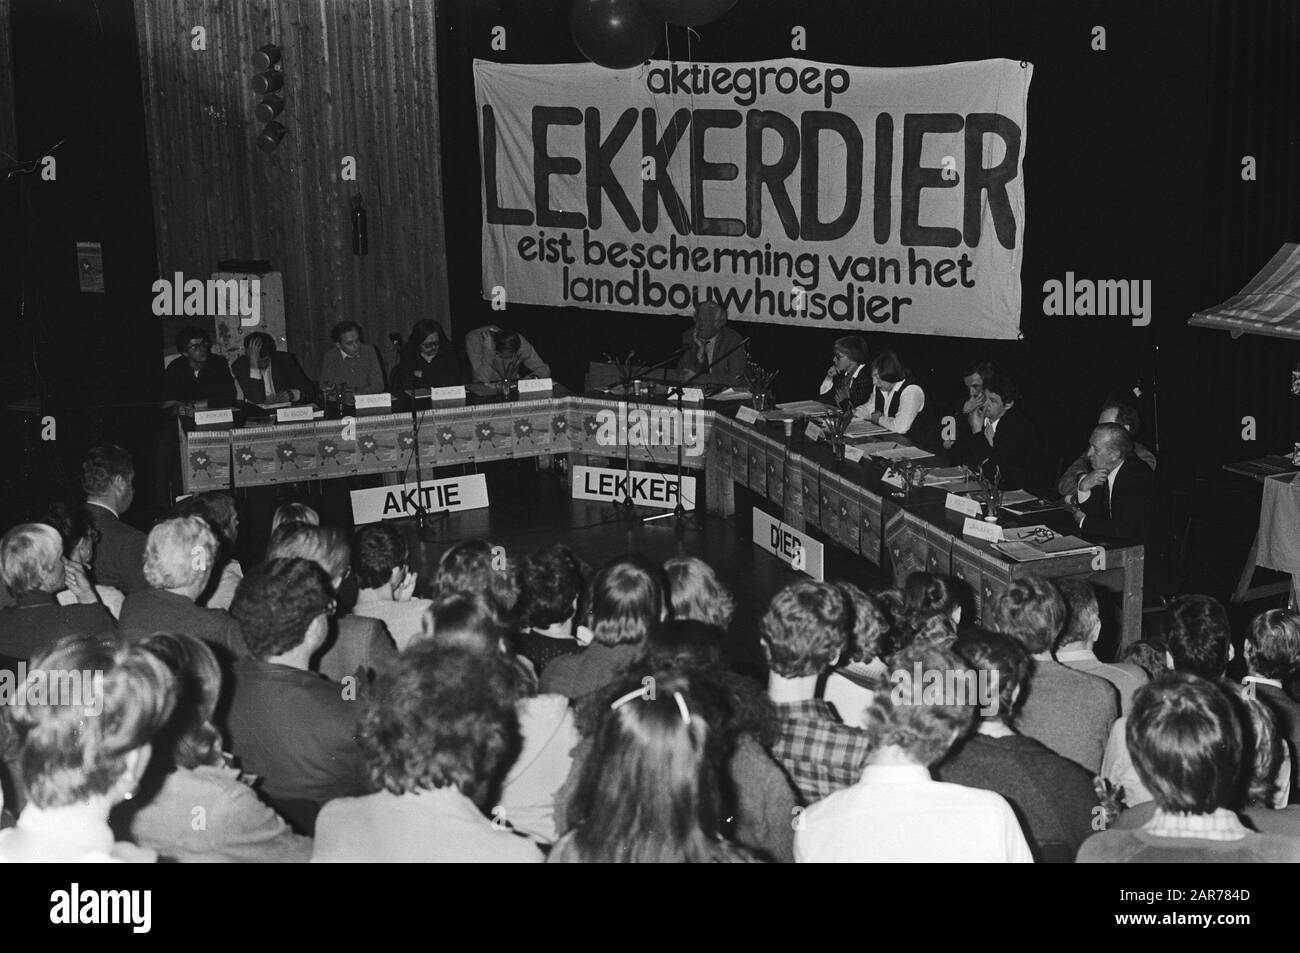 Assegnazione Lekker animale, forum discussione da parte del gruppo di azione Lekker politici animali interrogati da pubblicisti su animali da fattoria Data: 4 aprile 1981 Località: Utrecht Parole Chiave: POLICI, gruppi d'azione Foto Stock